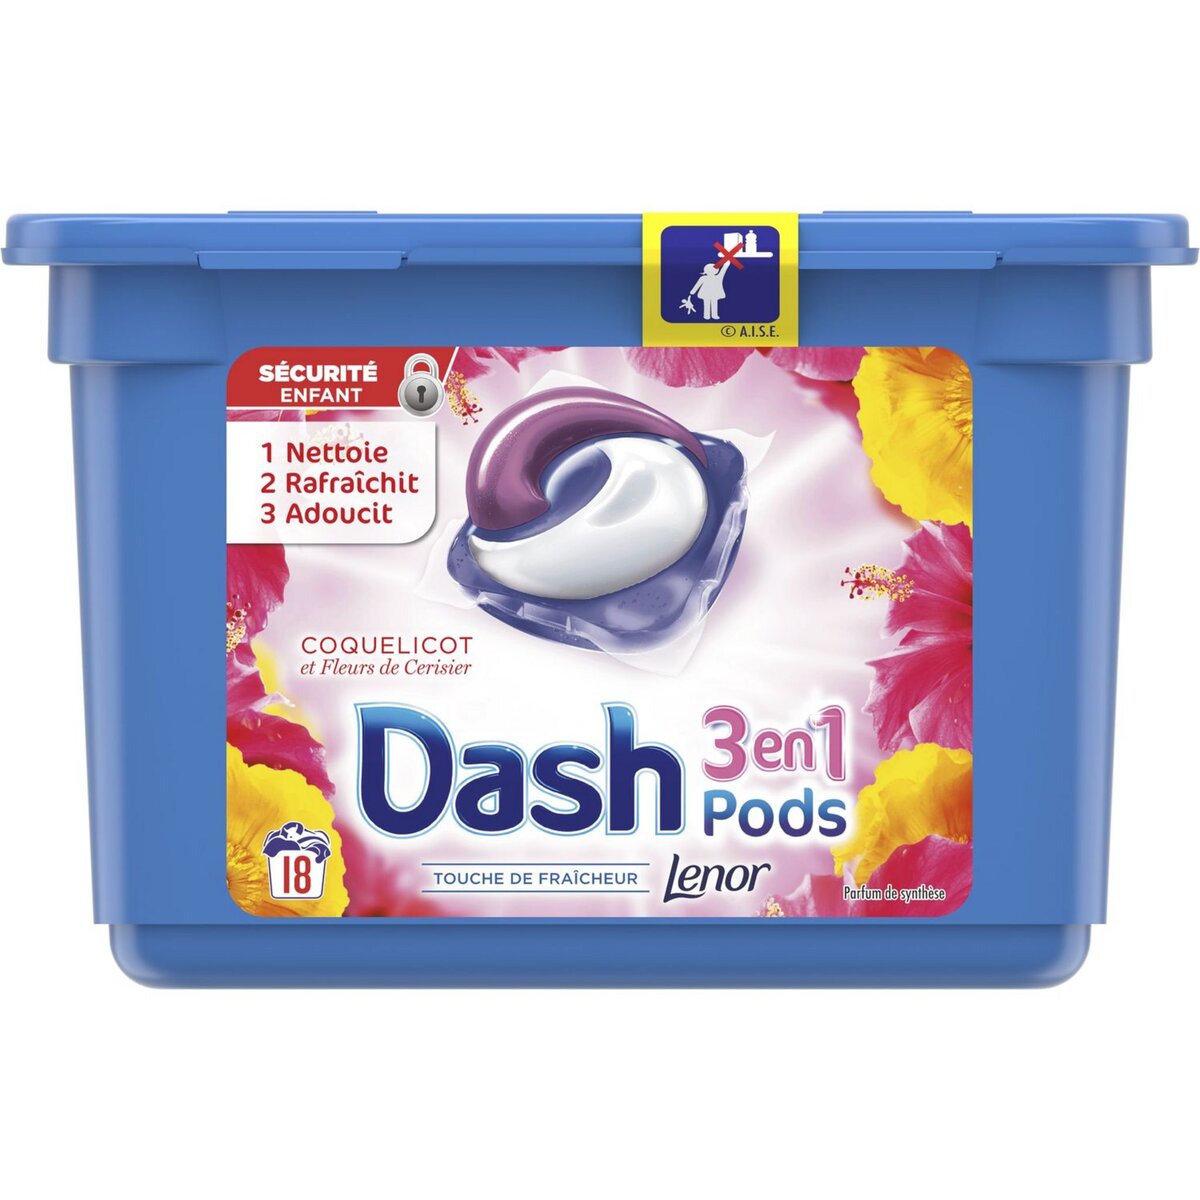 DASH Dash liquide perles coquelicot écodoses x18 -0,475l